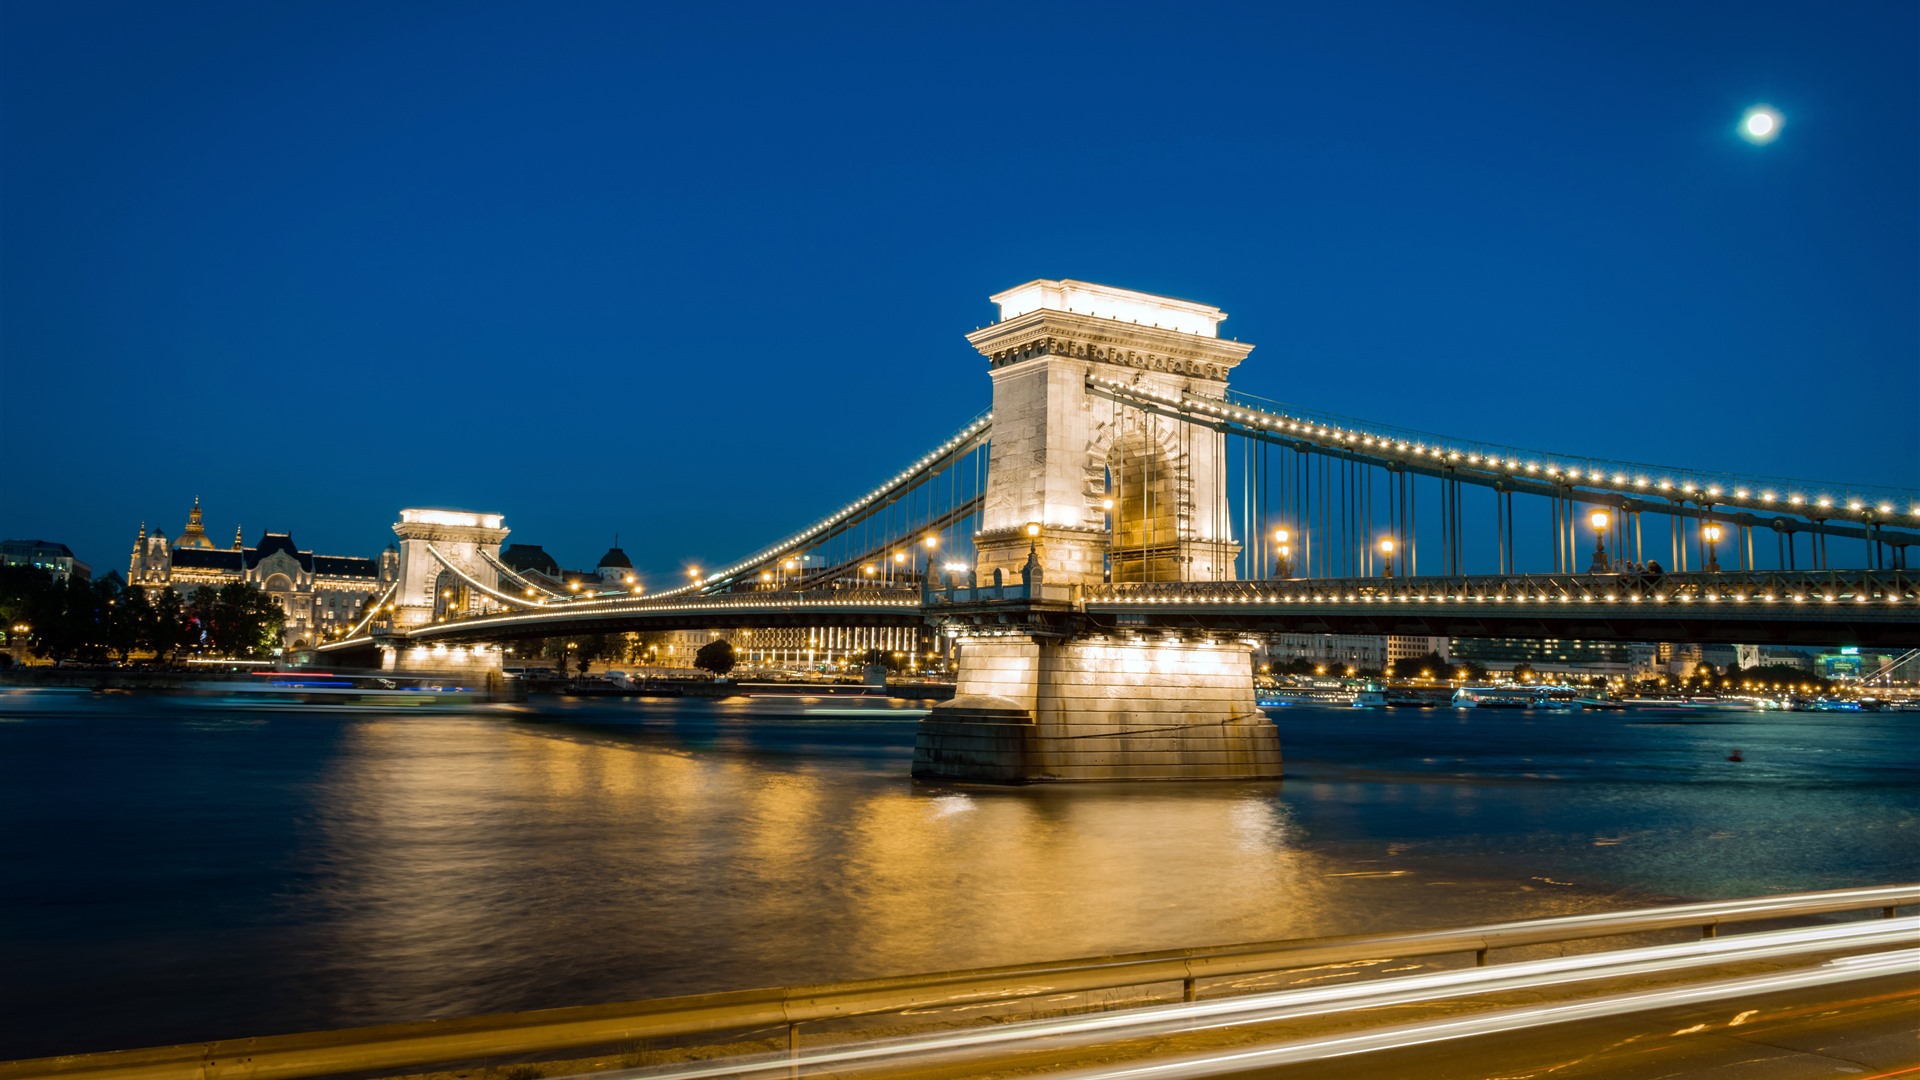 Szechenyi Chain Bridge Budapest Hungary Night HD Wallpaper 1920x1080 